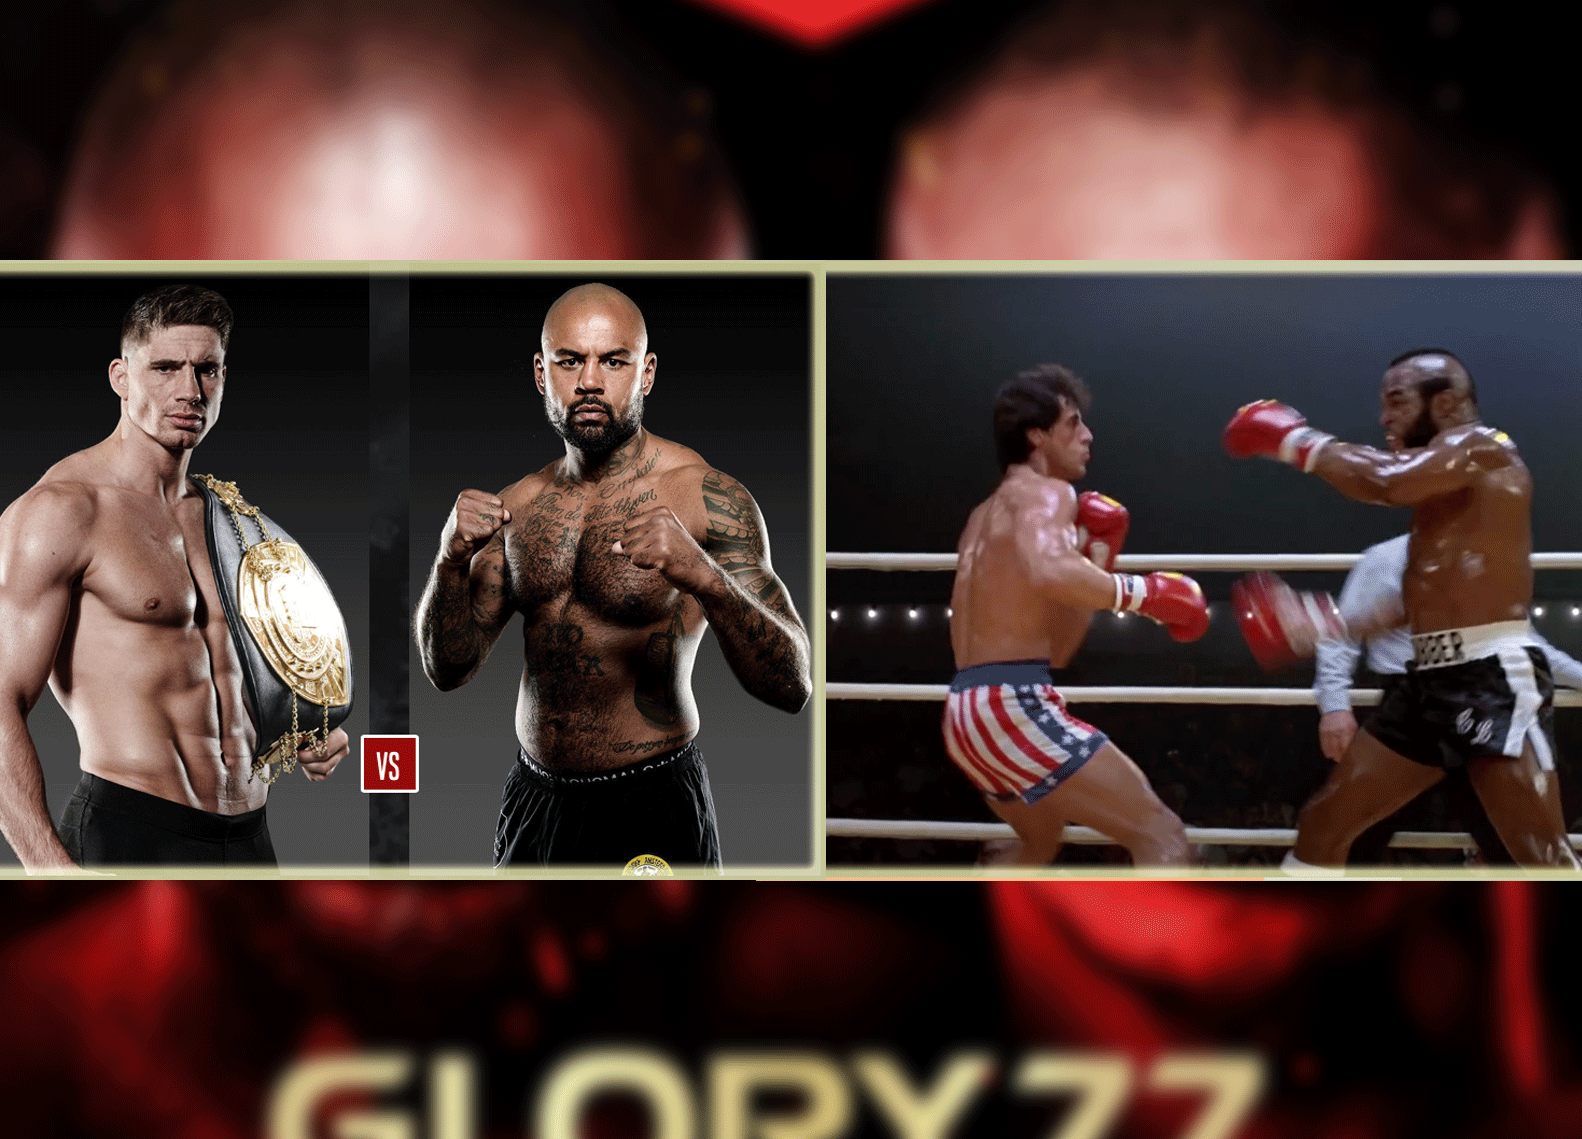 Rico vs Hesdy heeft groot 'Rocky 3' gehalte (video)